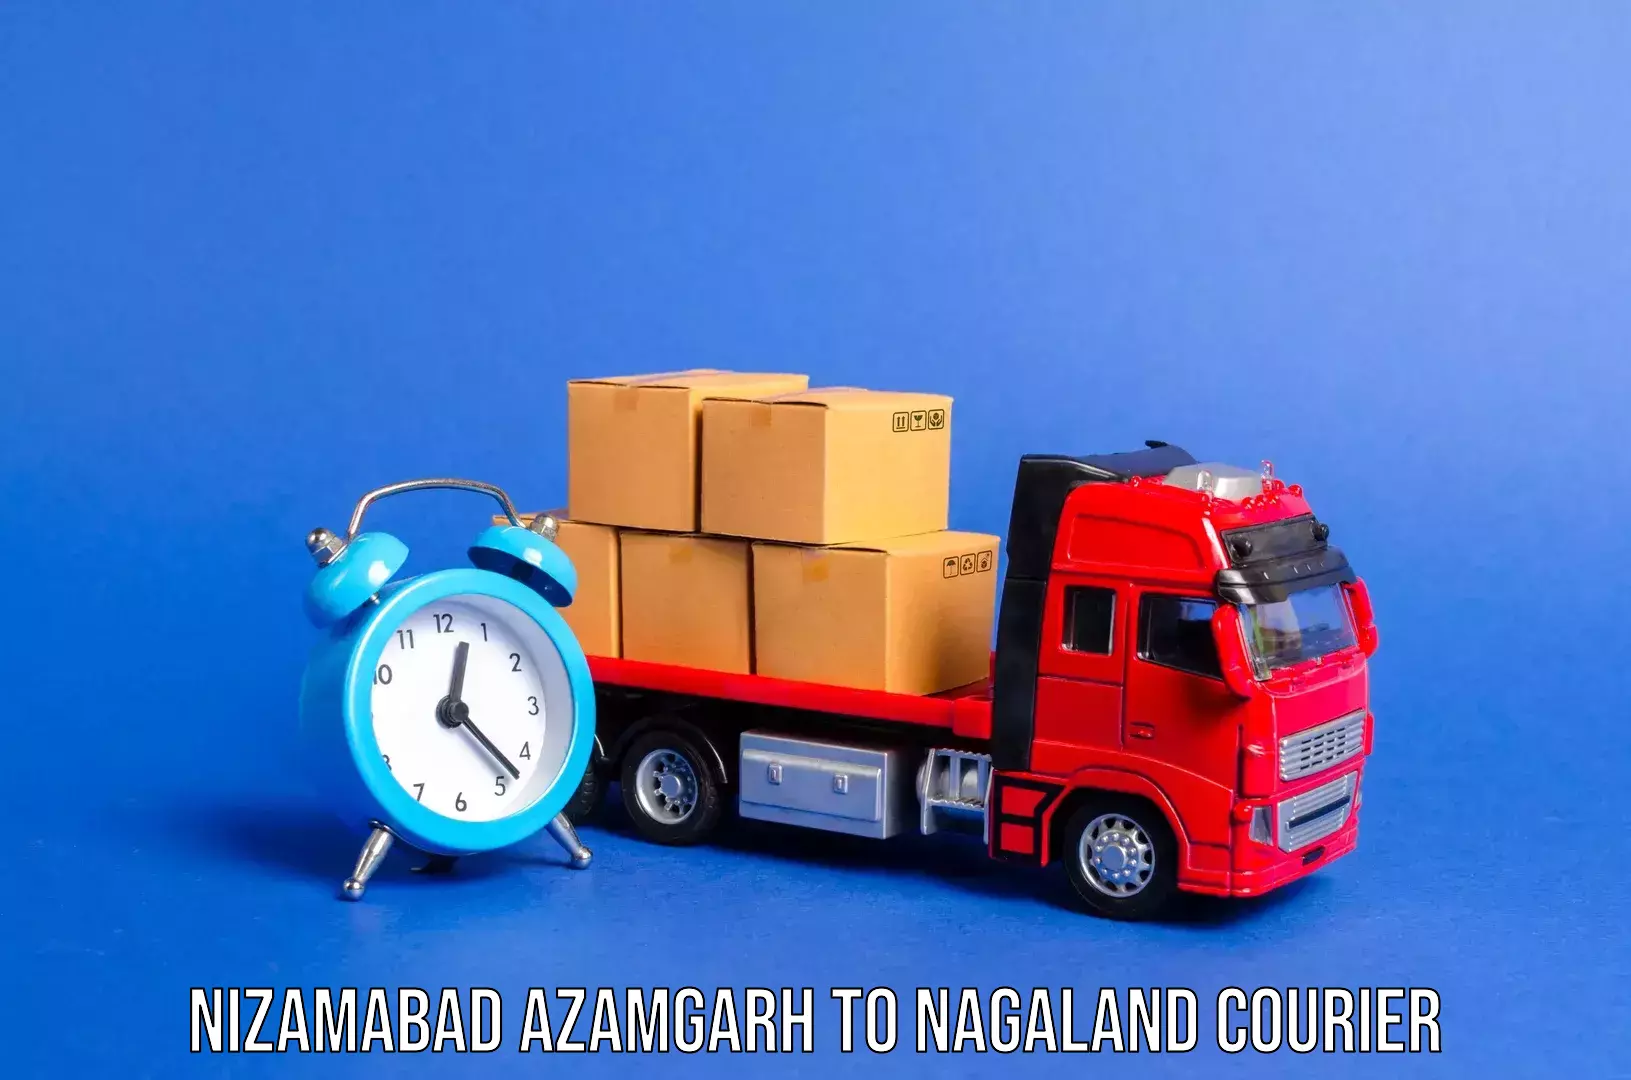 Baggage transport network Nizamabad Azamgarh to Nagaland